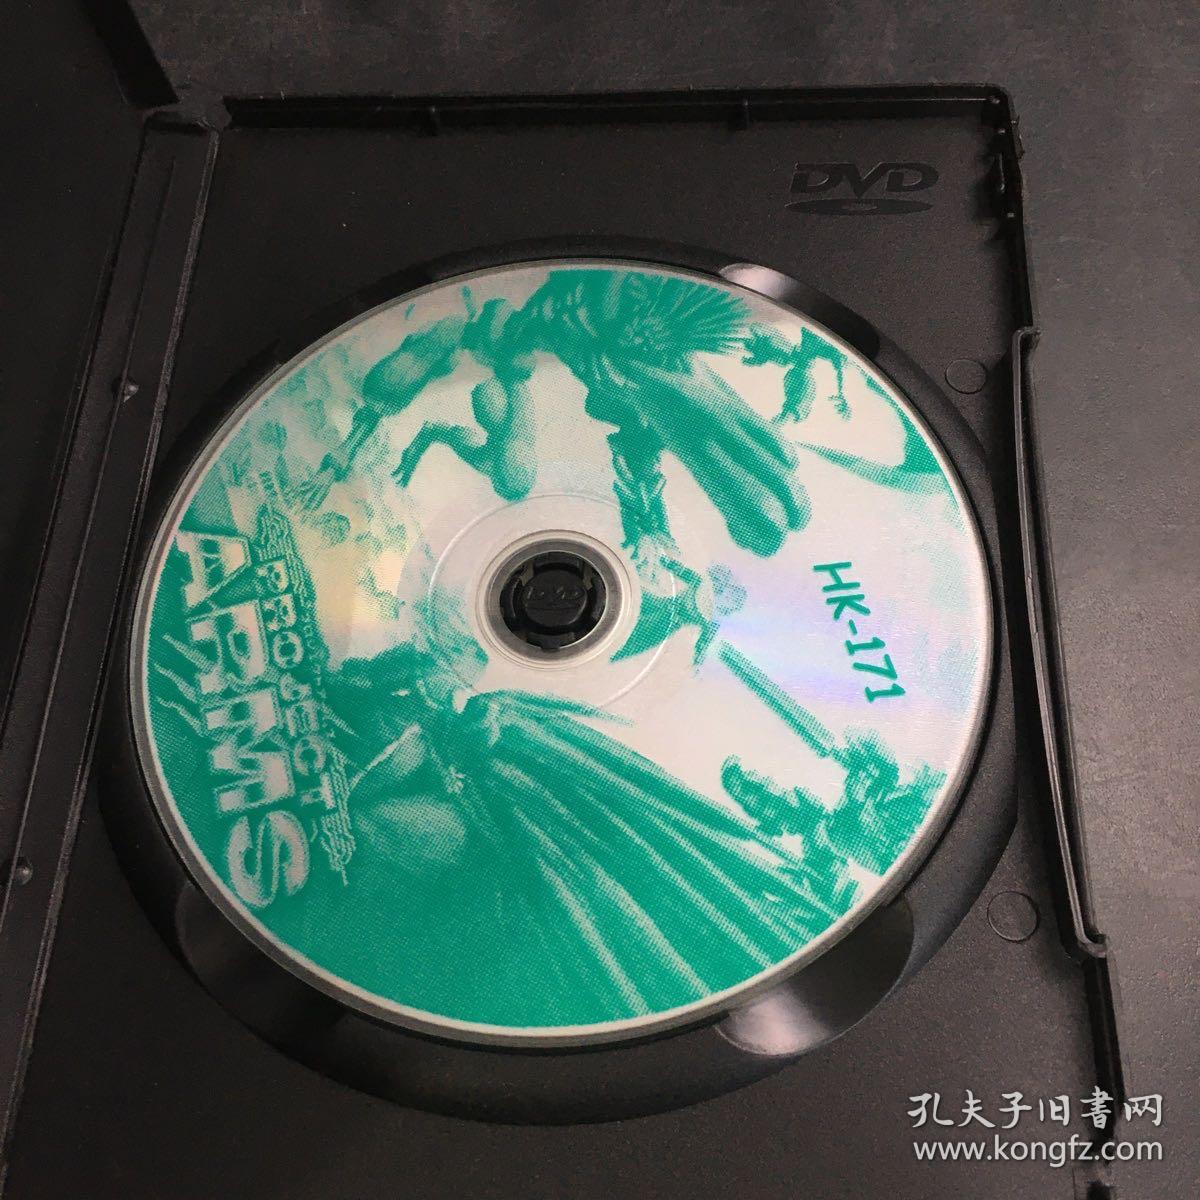 PROJECT ARMS（游戏光盘）【1张碟片   有划痕】外盒破损